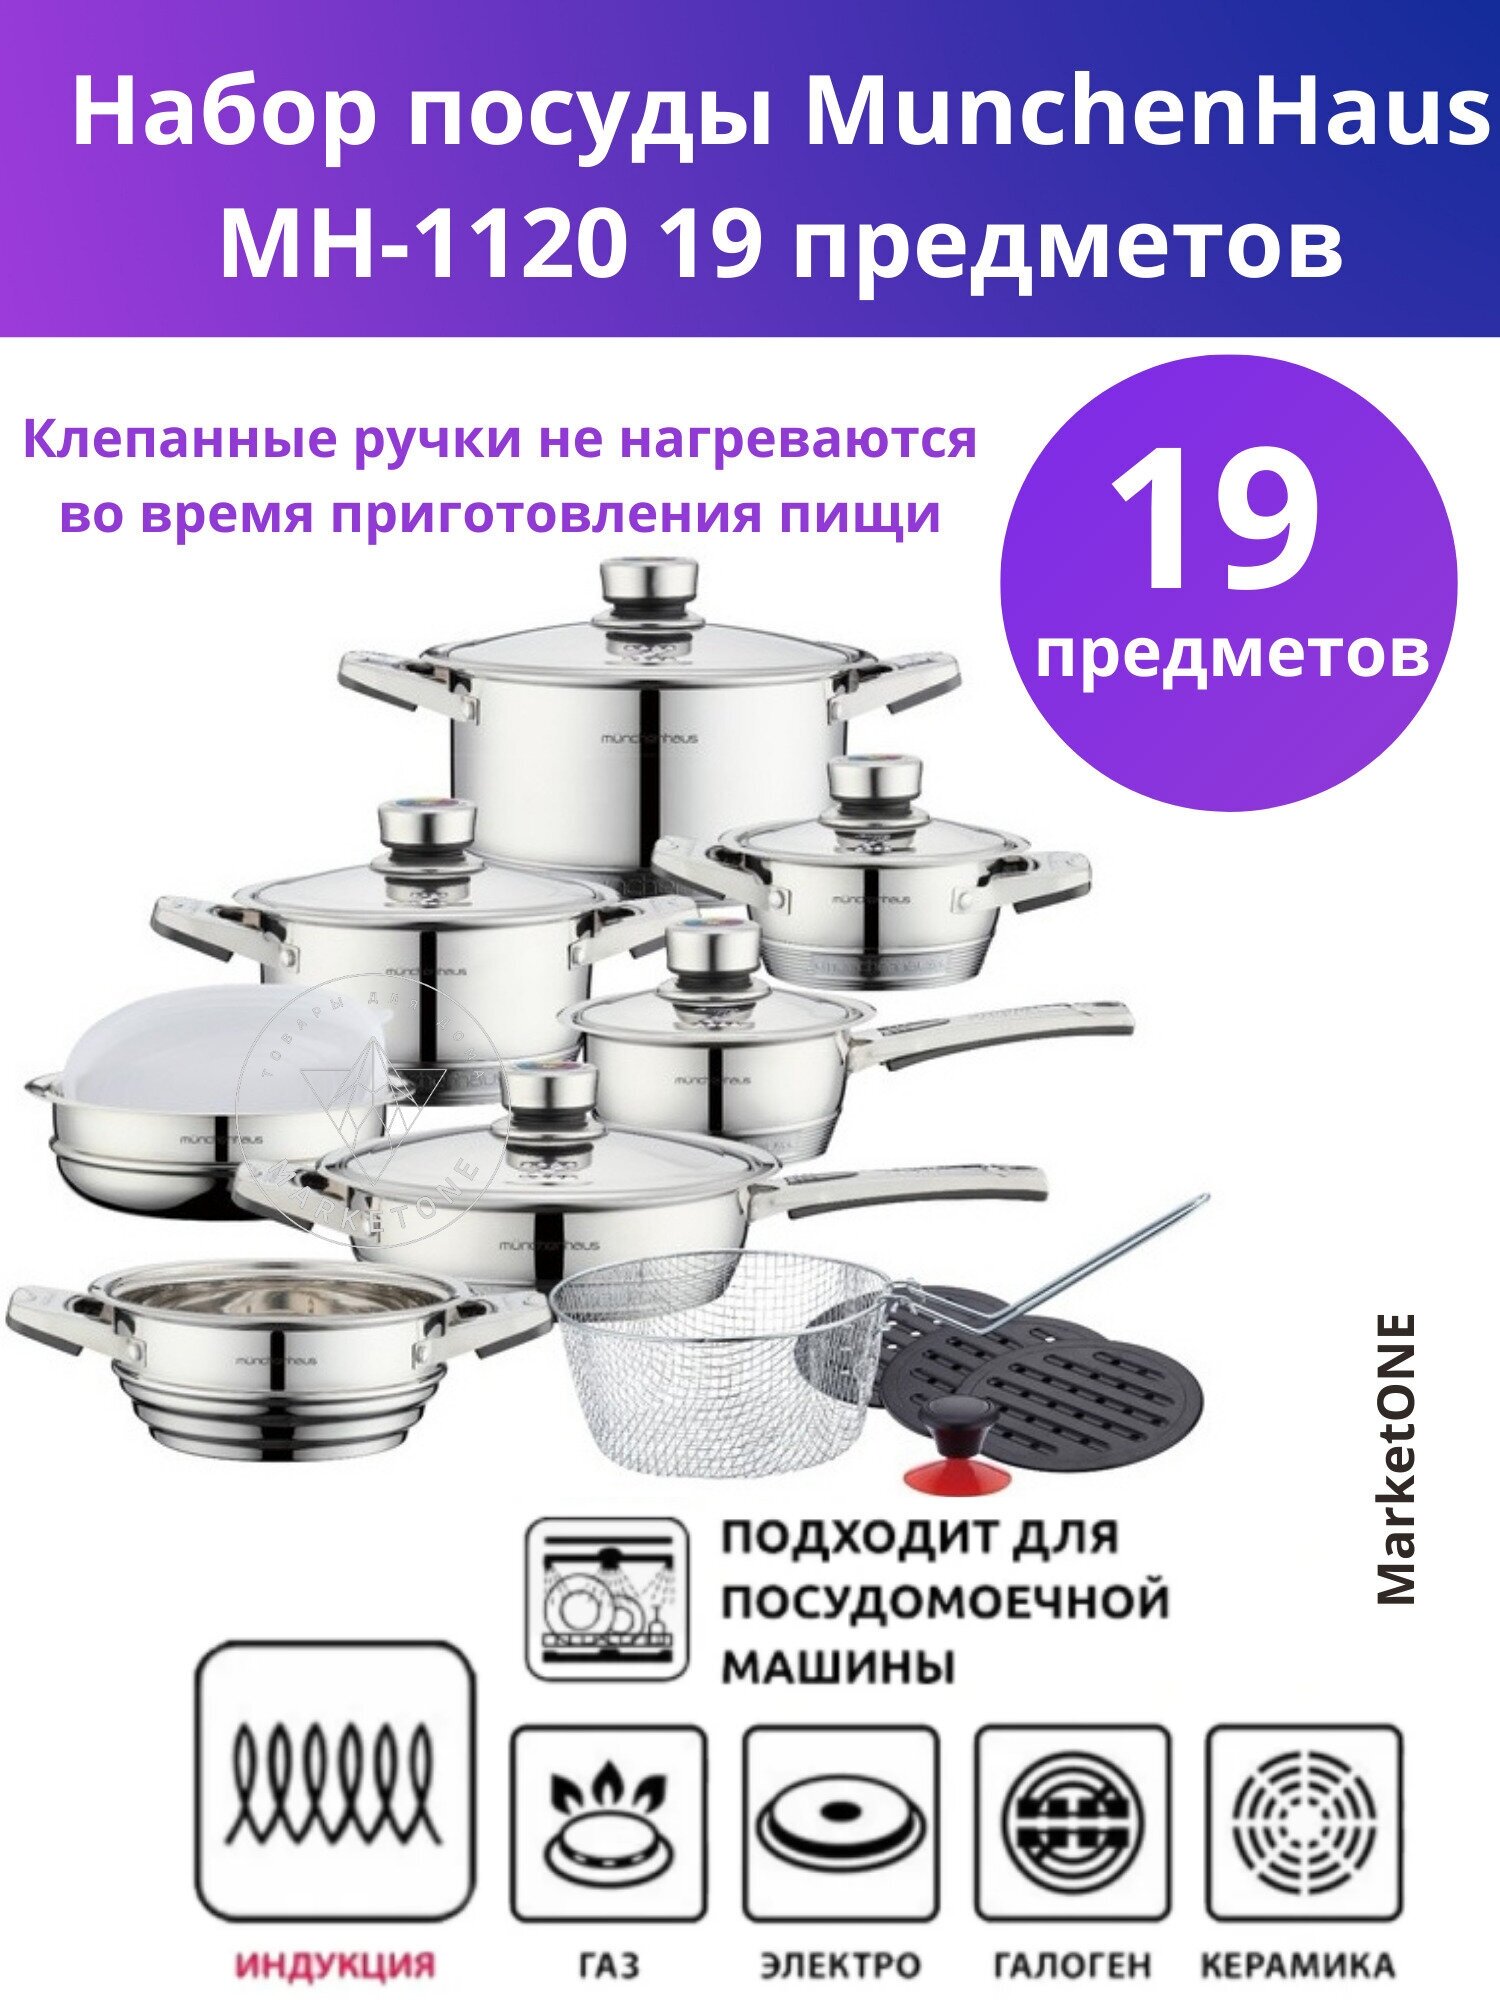 Набор посуды MunchenHaus MH-1120 19 предметов